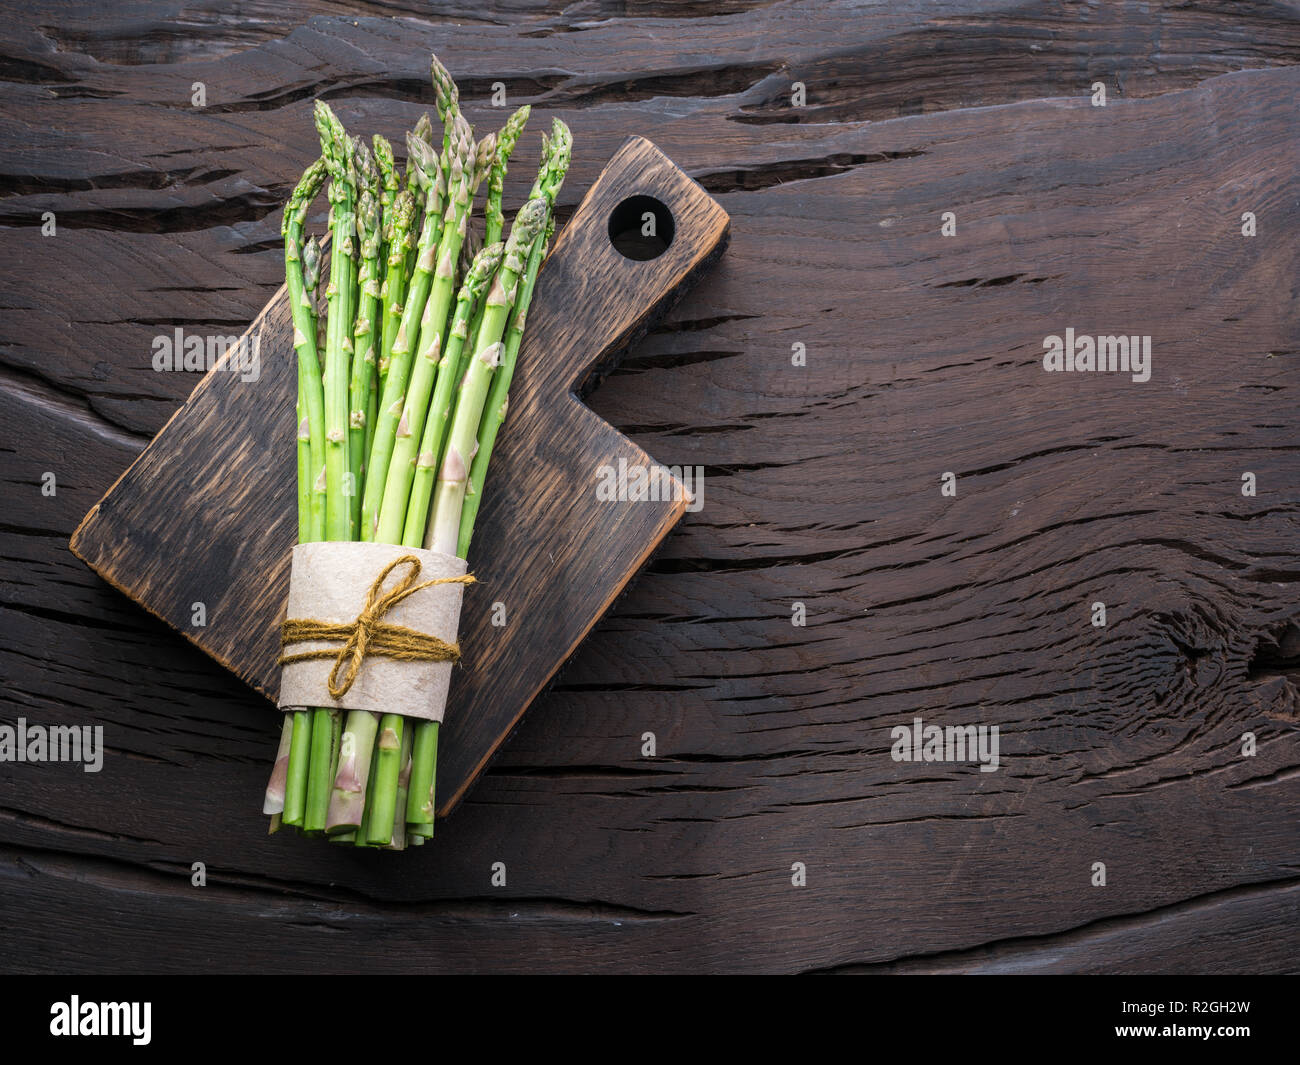 Les jeunes pousses d'asperges vertes sur table en bois. Vue d'en haut. Banque D'Images